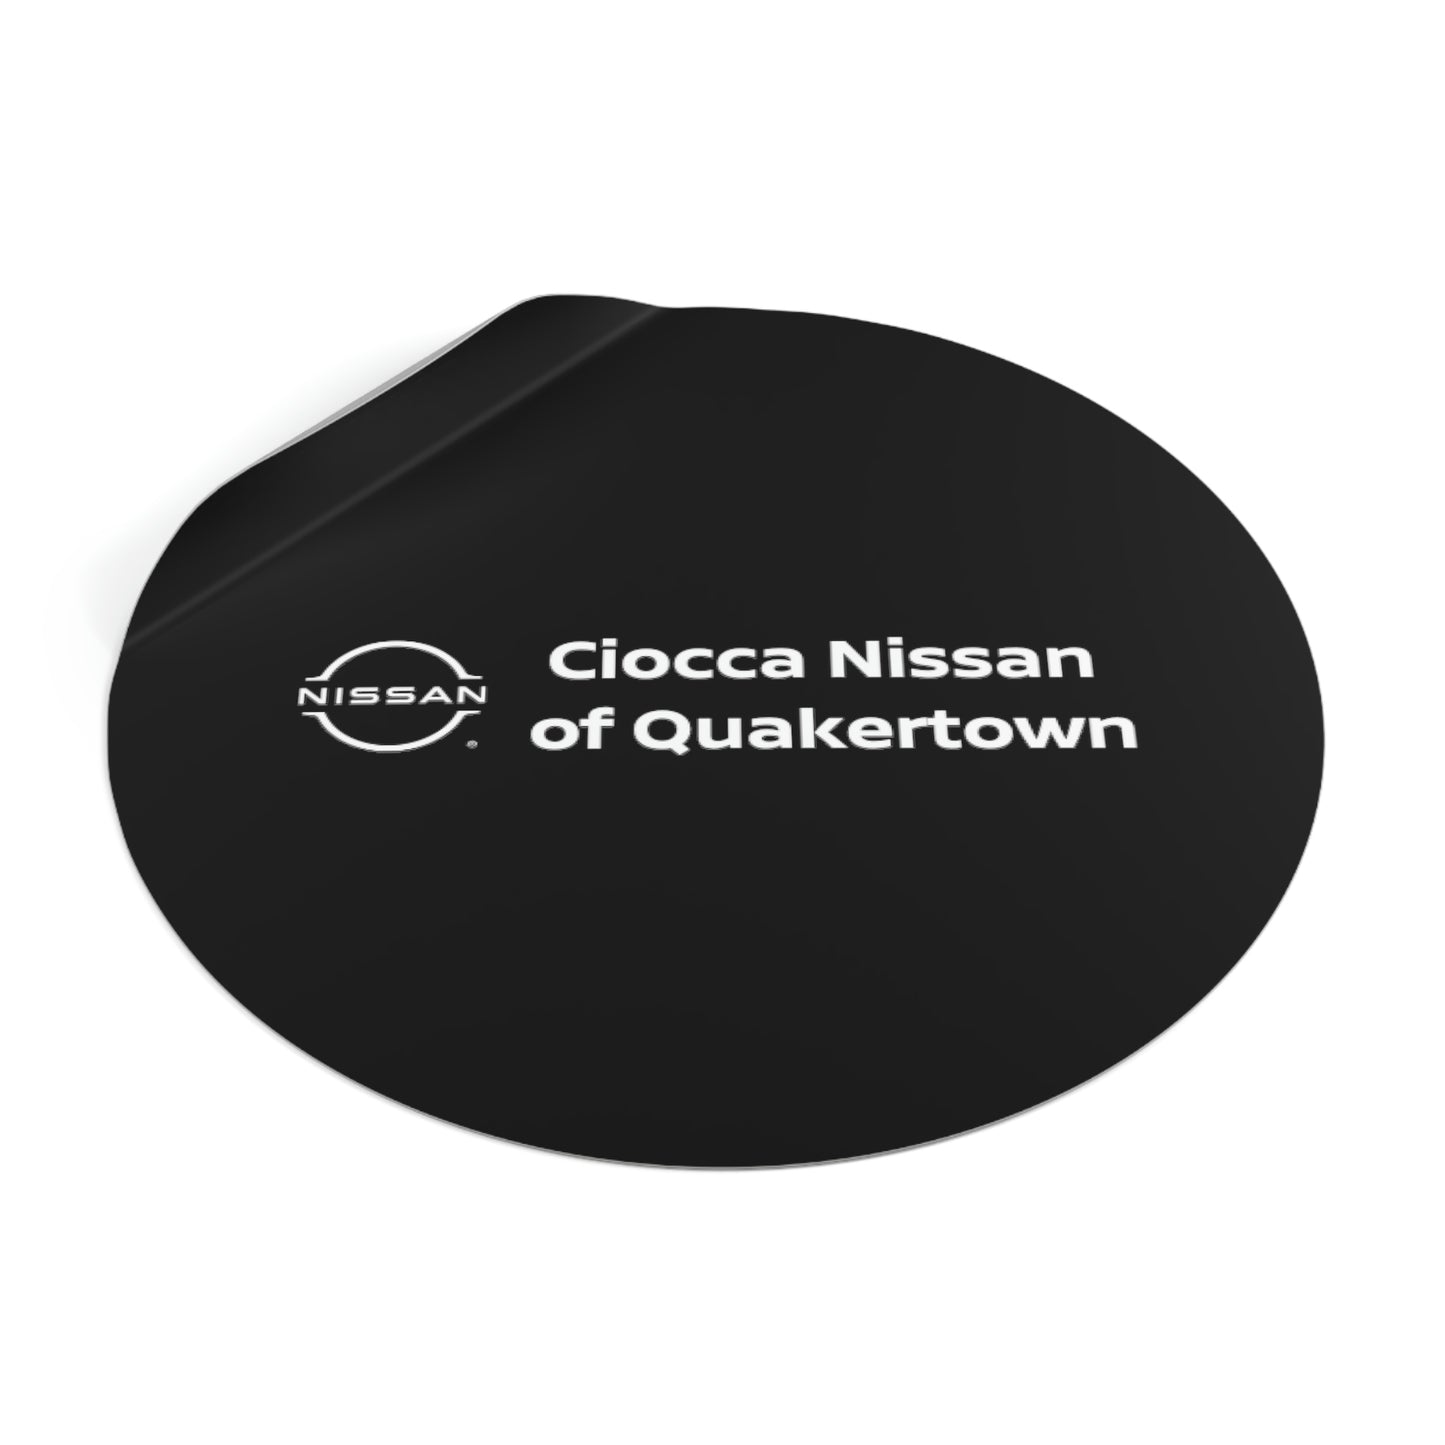 Round Vinyl Stickers - Nissan Quakertown